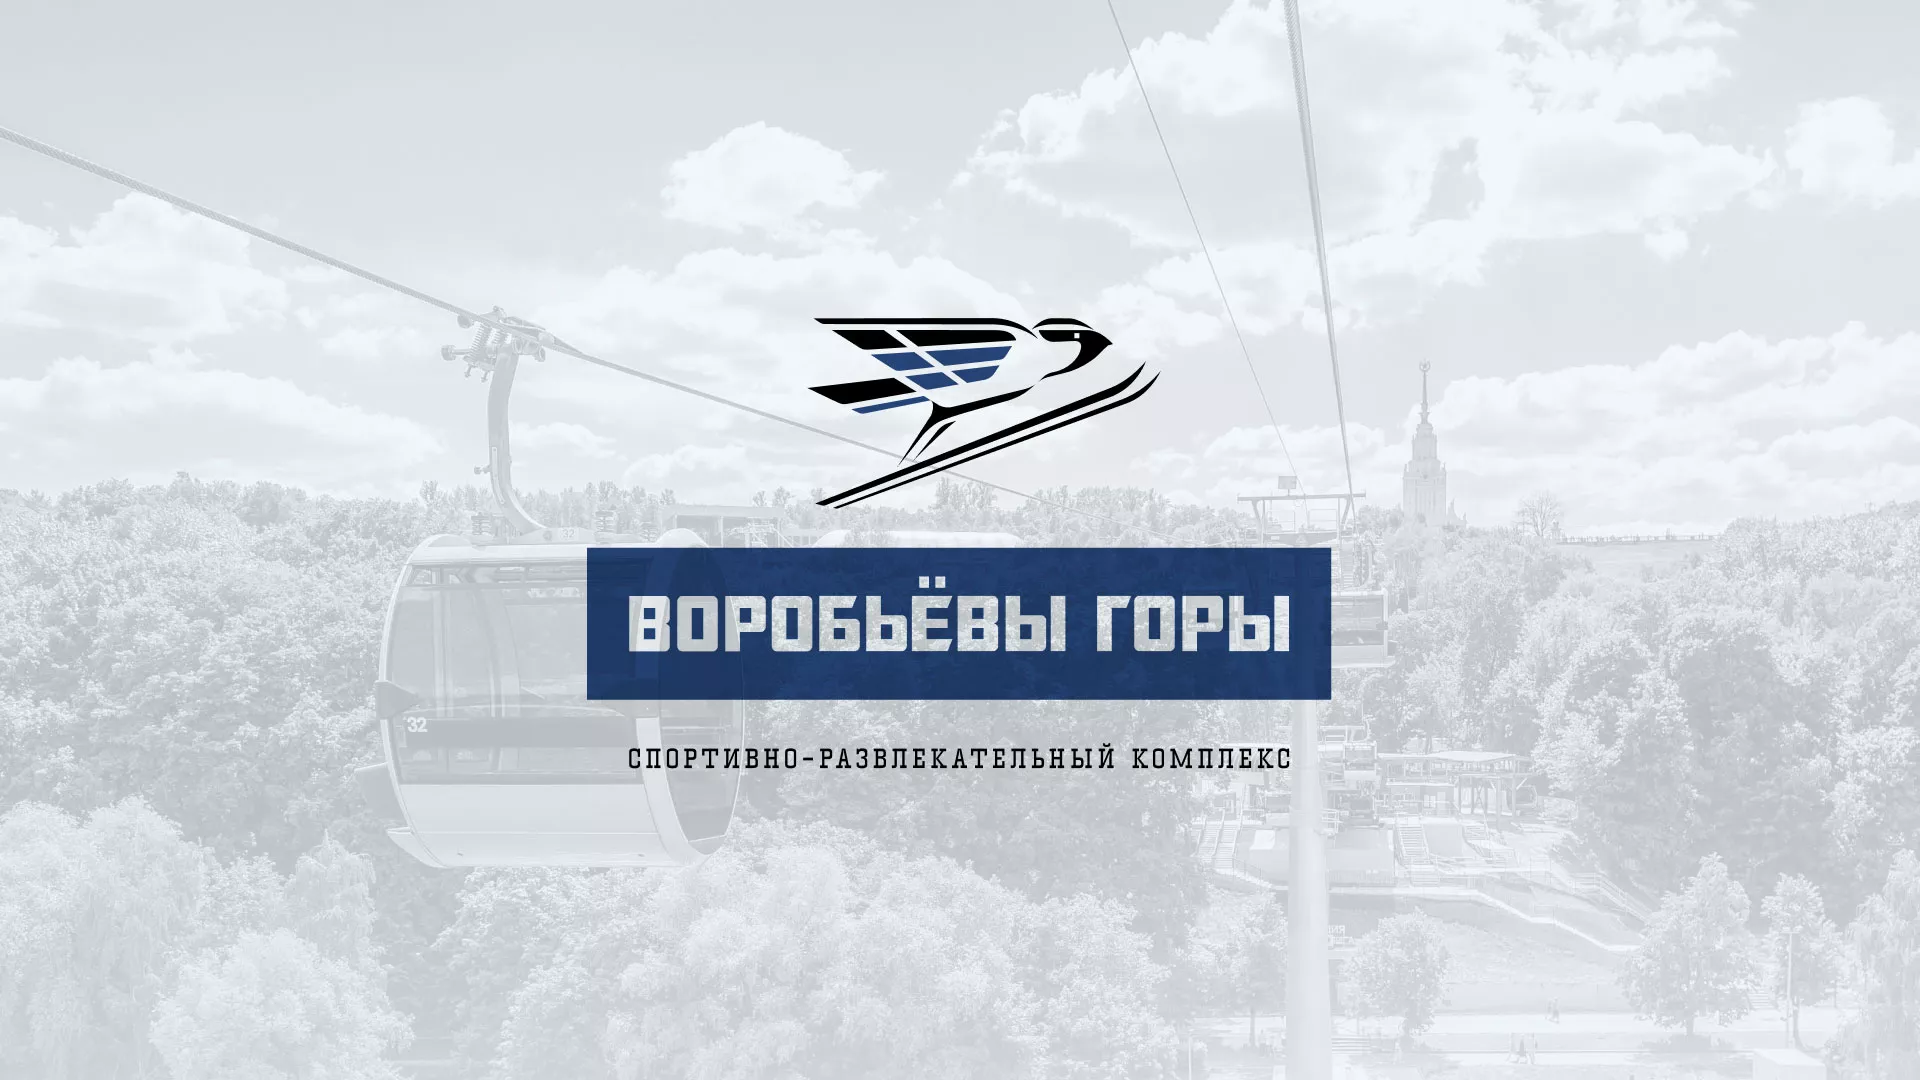 Разработка сайта в Сосновоборске для спортивно-развлекательного комплекса «Воробьёвы горы»